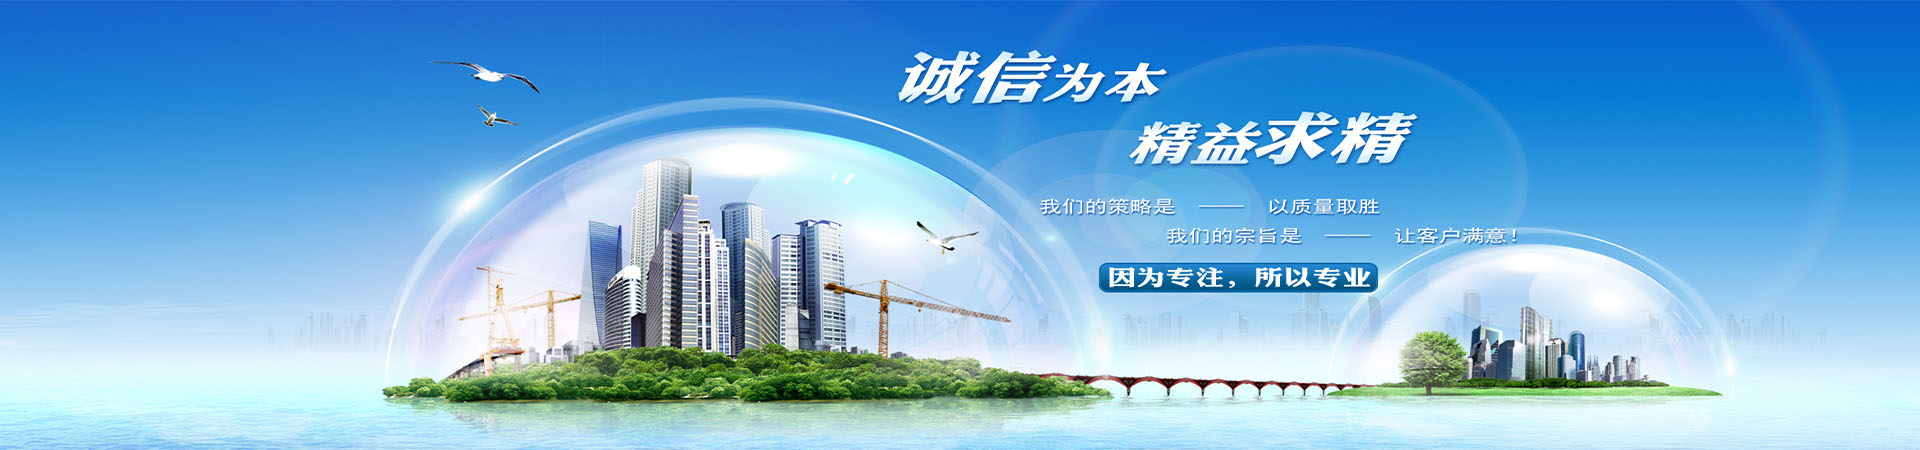 上海到果洛整车零担公司、本地上海到果洛整车零担公司、、上海到果洛整车零担公司